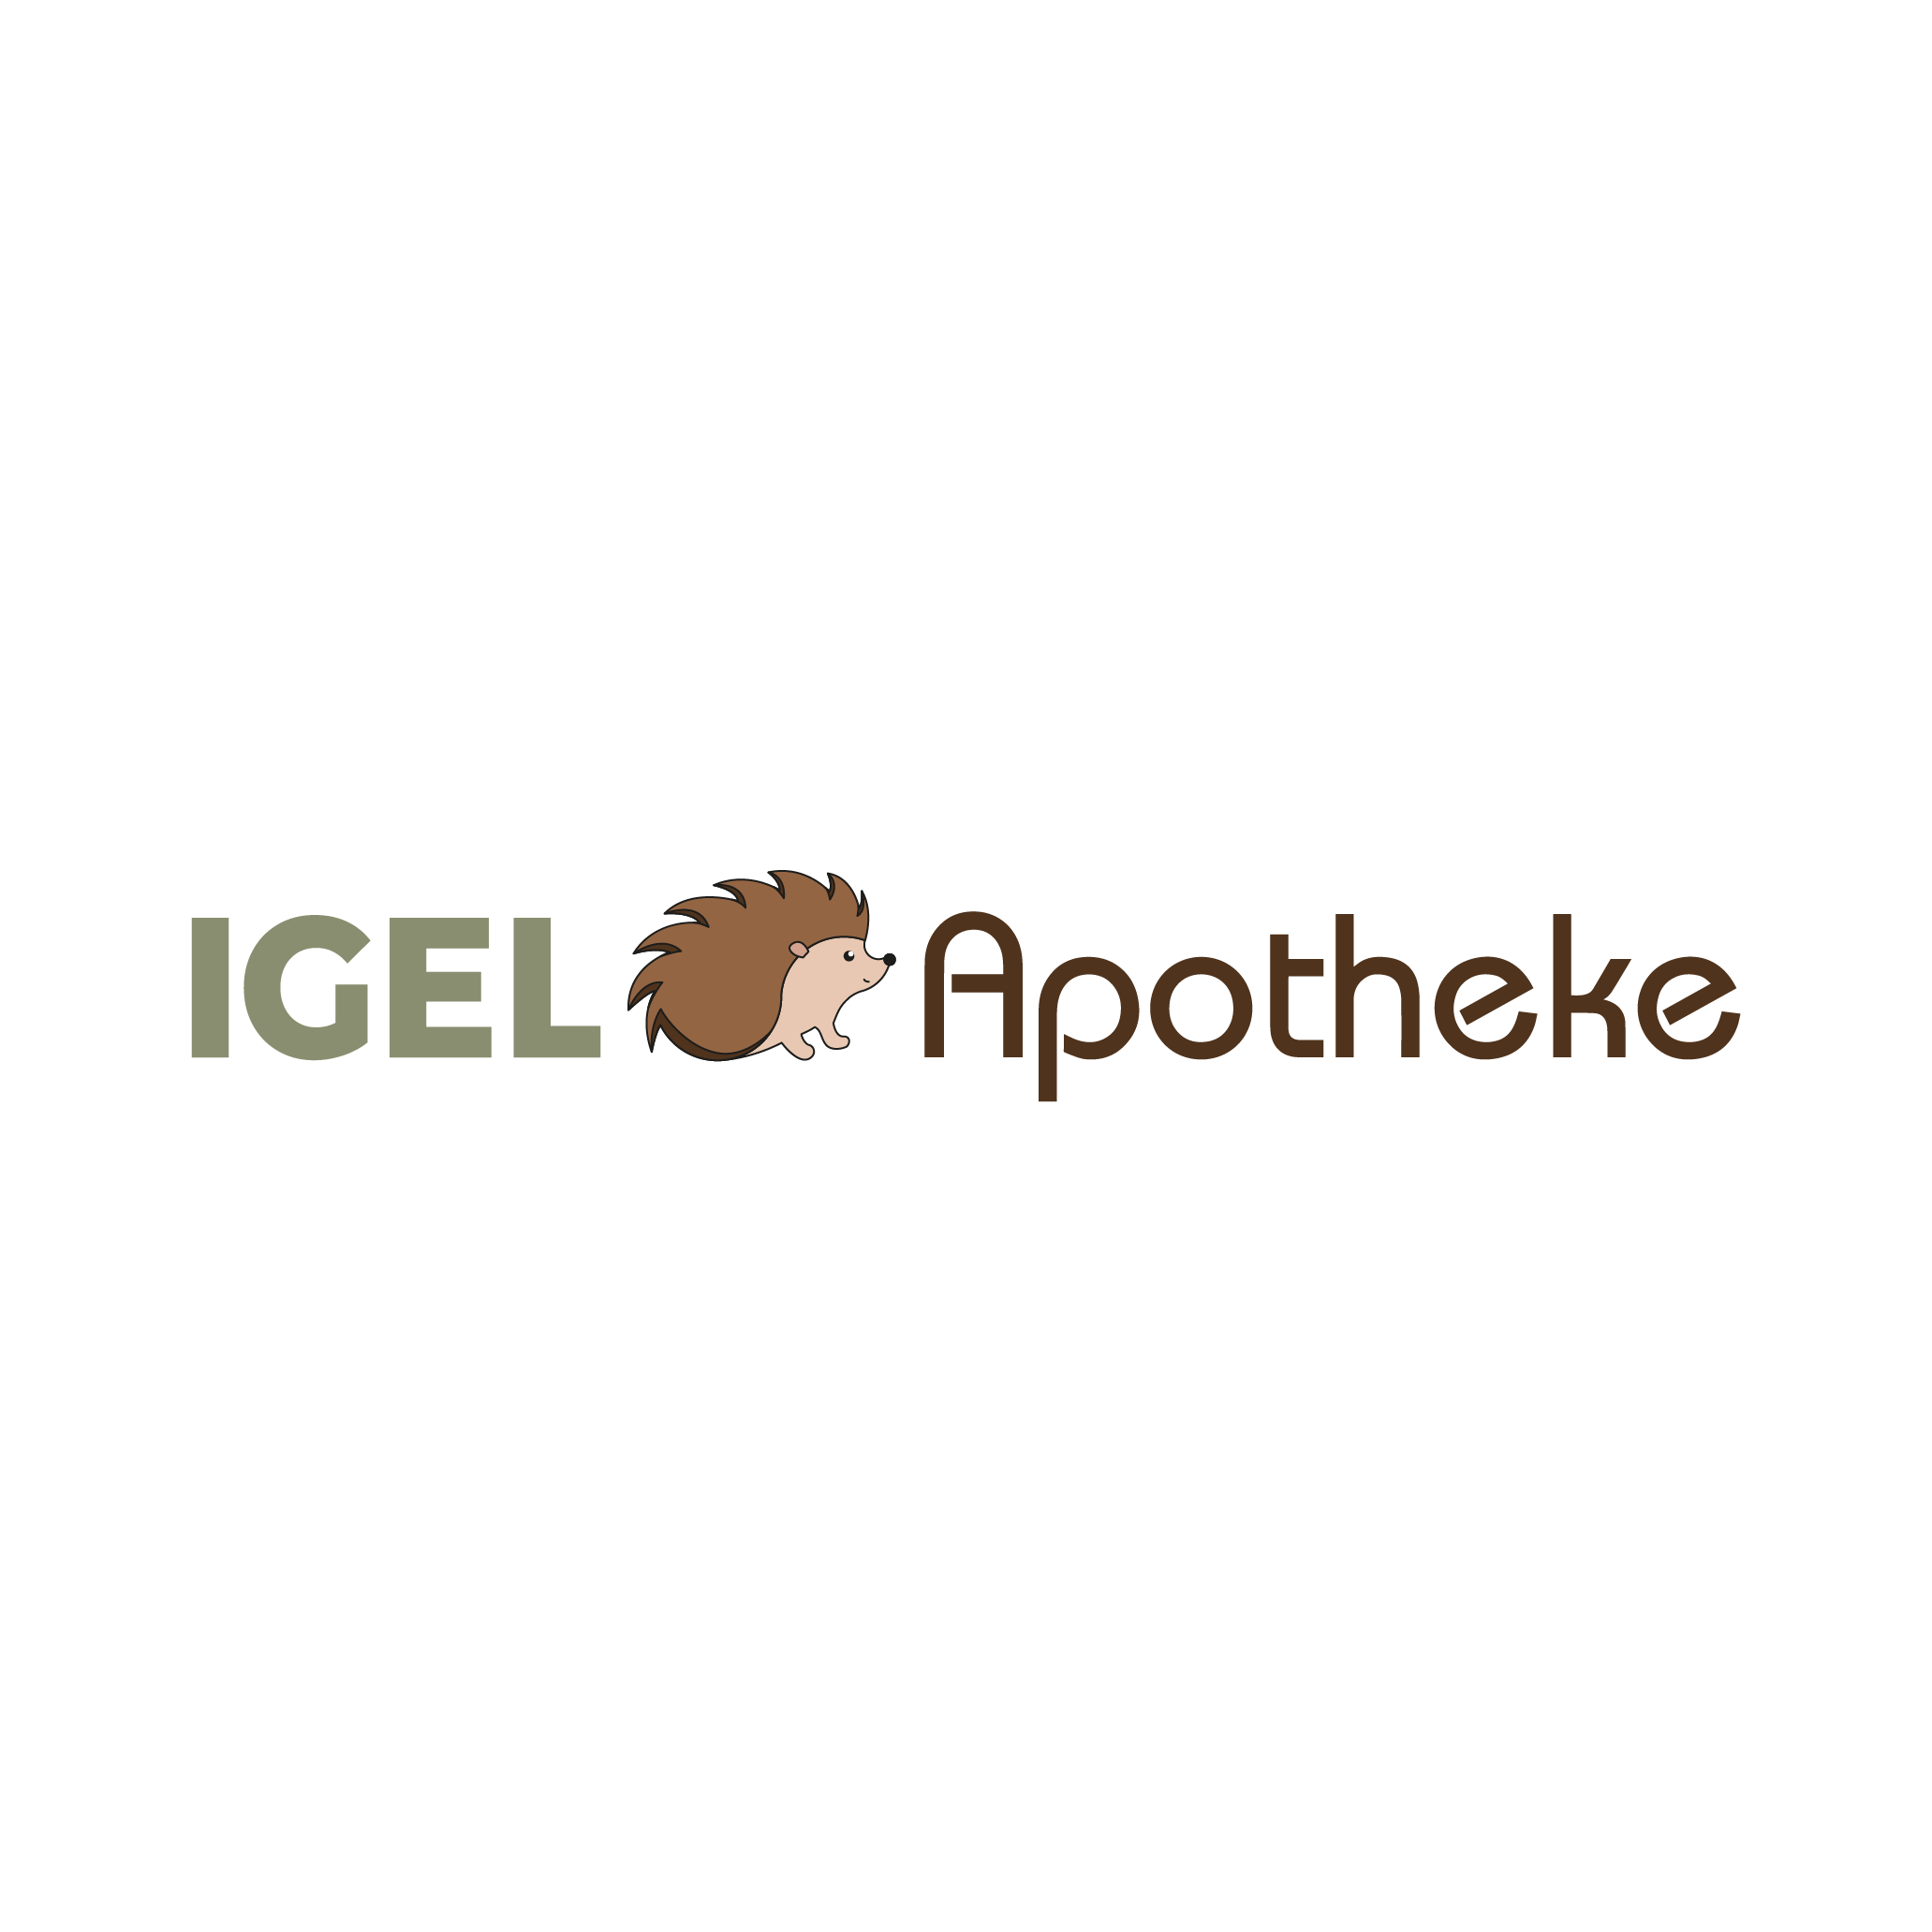 Igel-Apotheke  